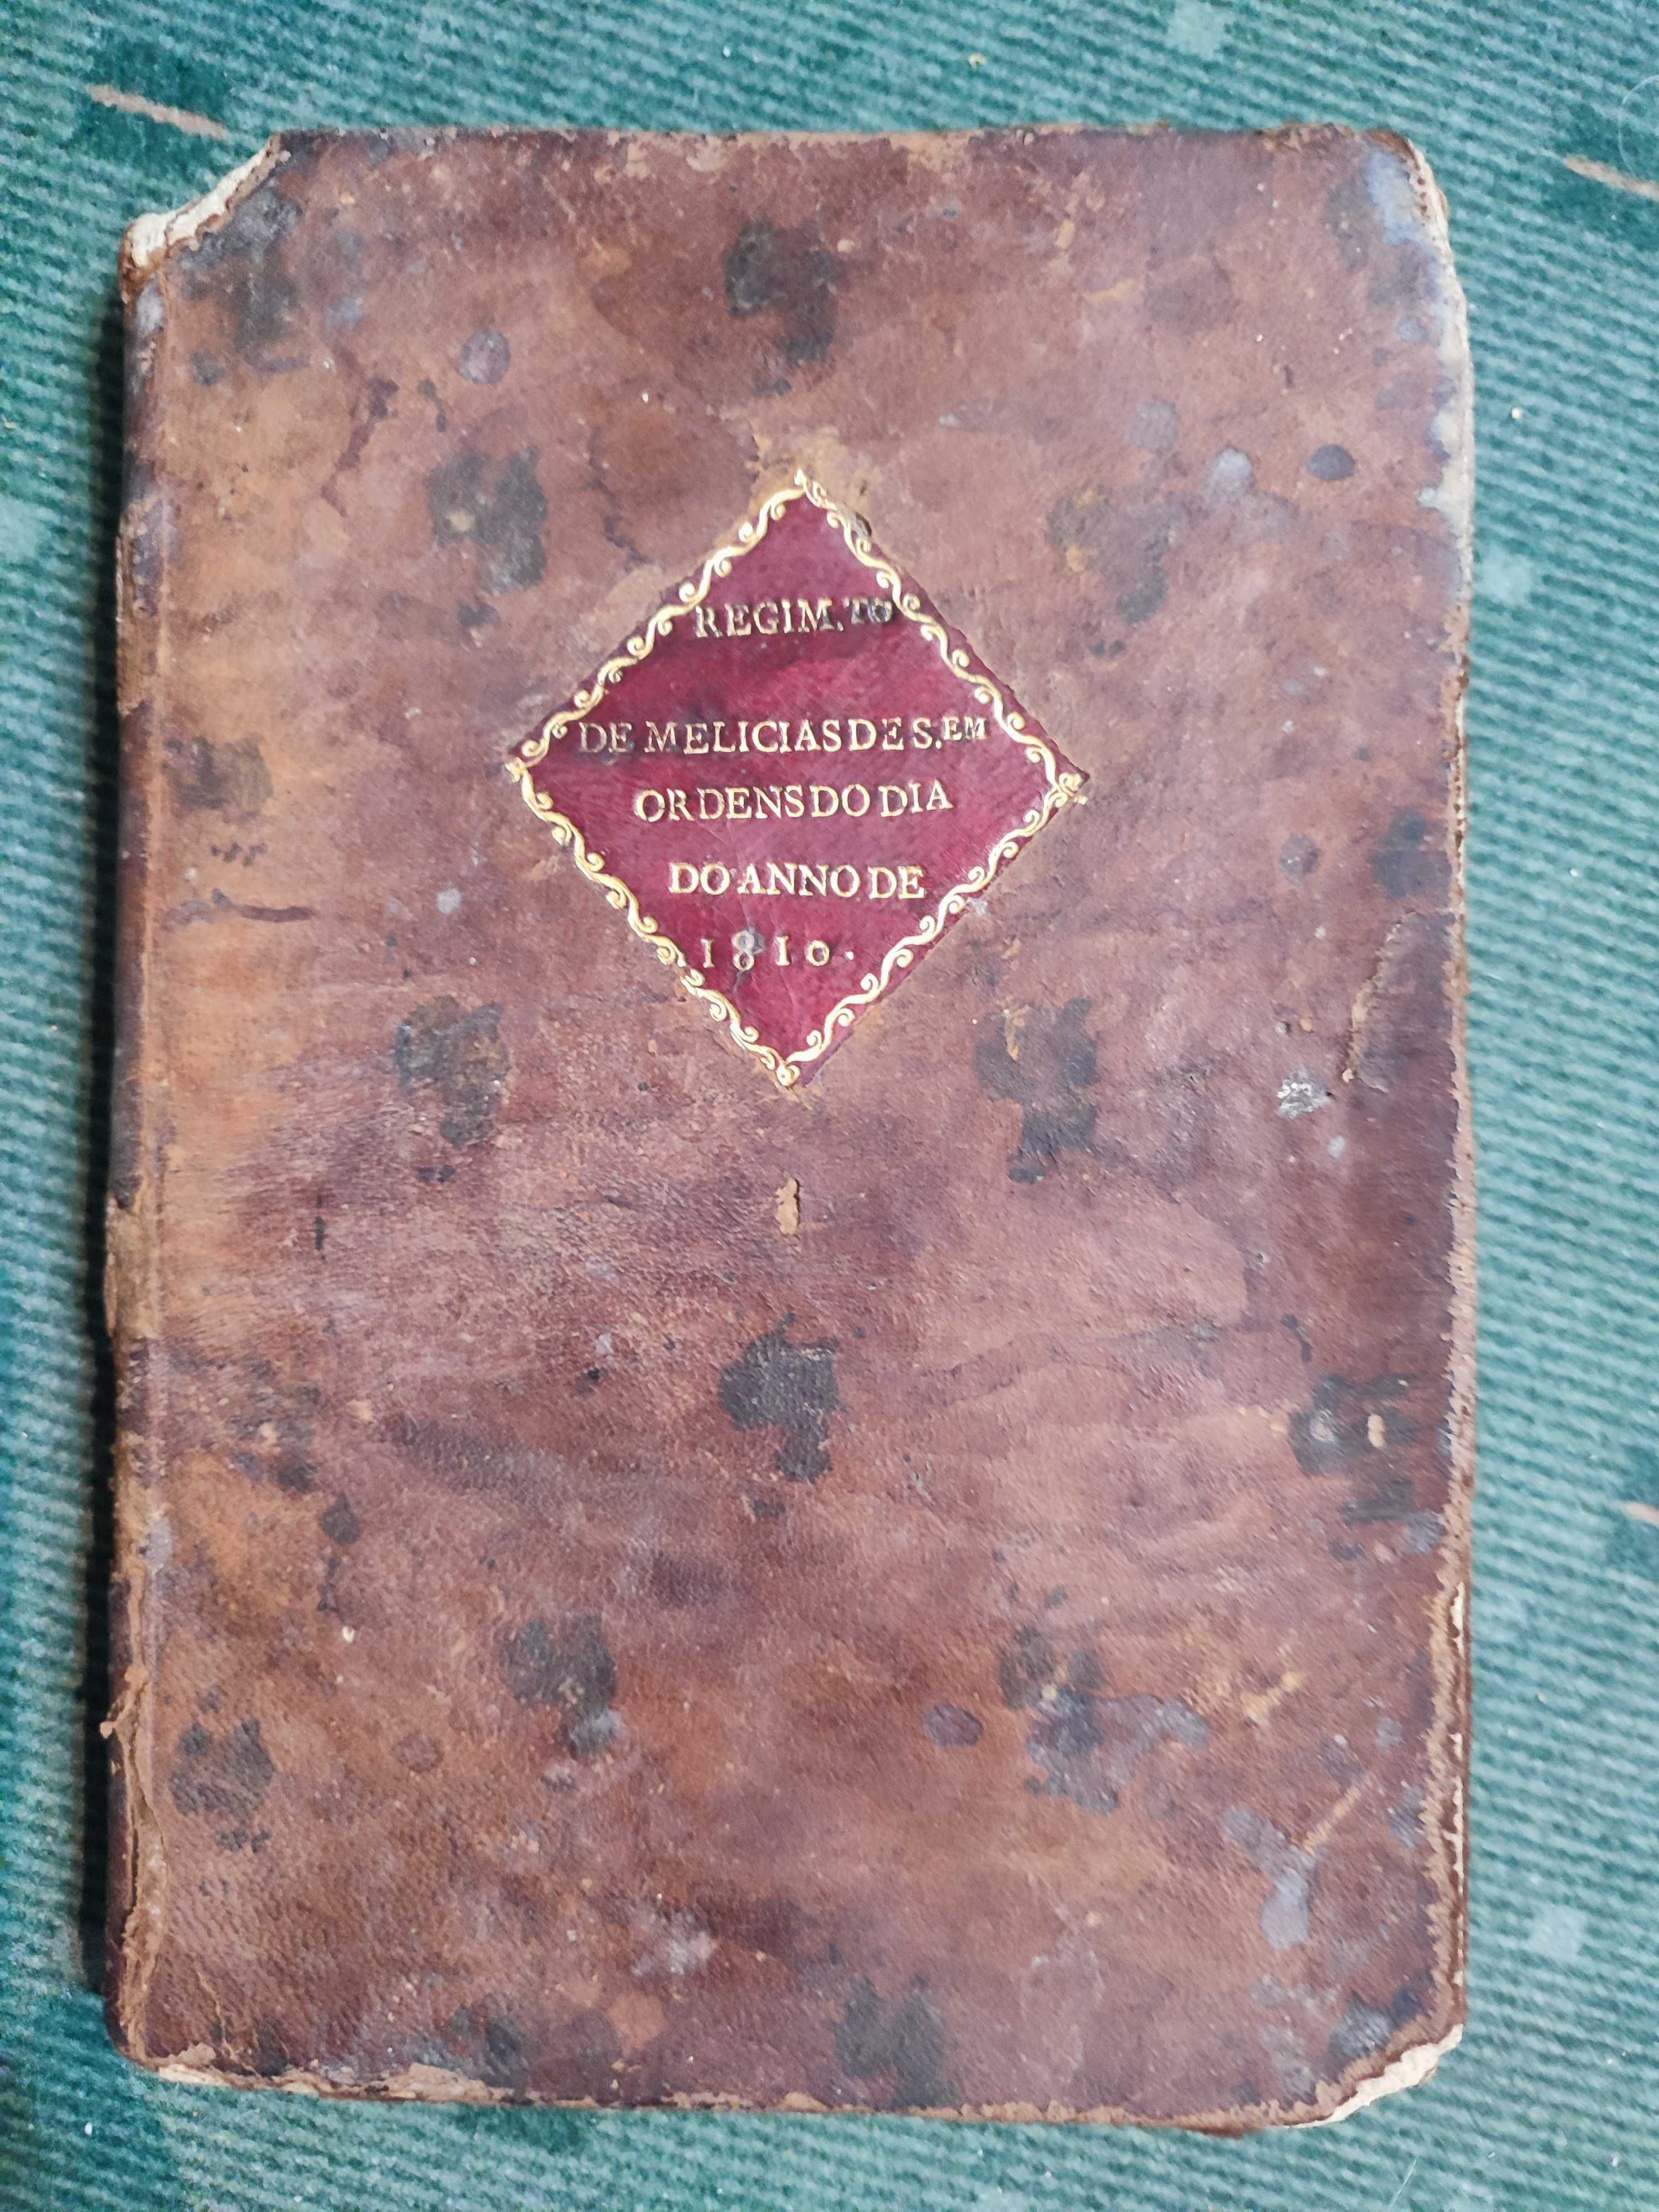 Collecção das Ordens do dia Guilherme Carr Beresford - 1810